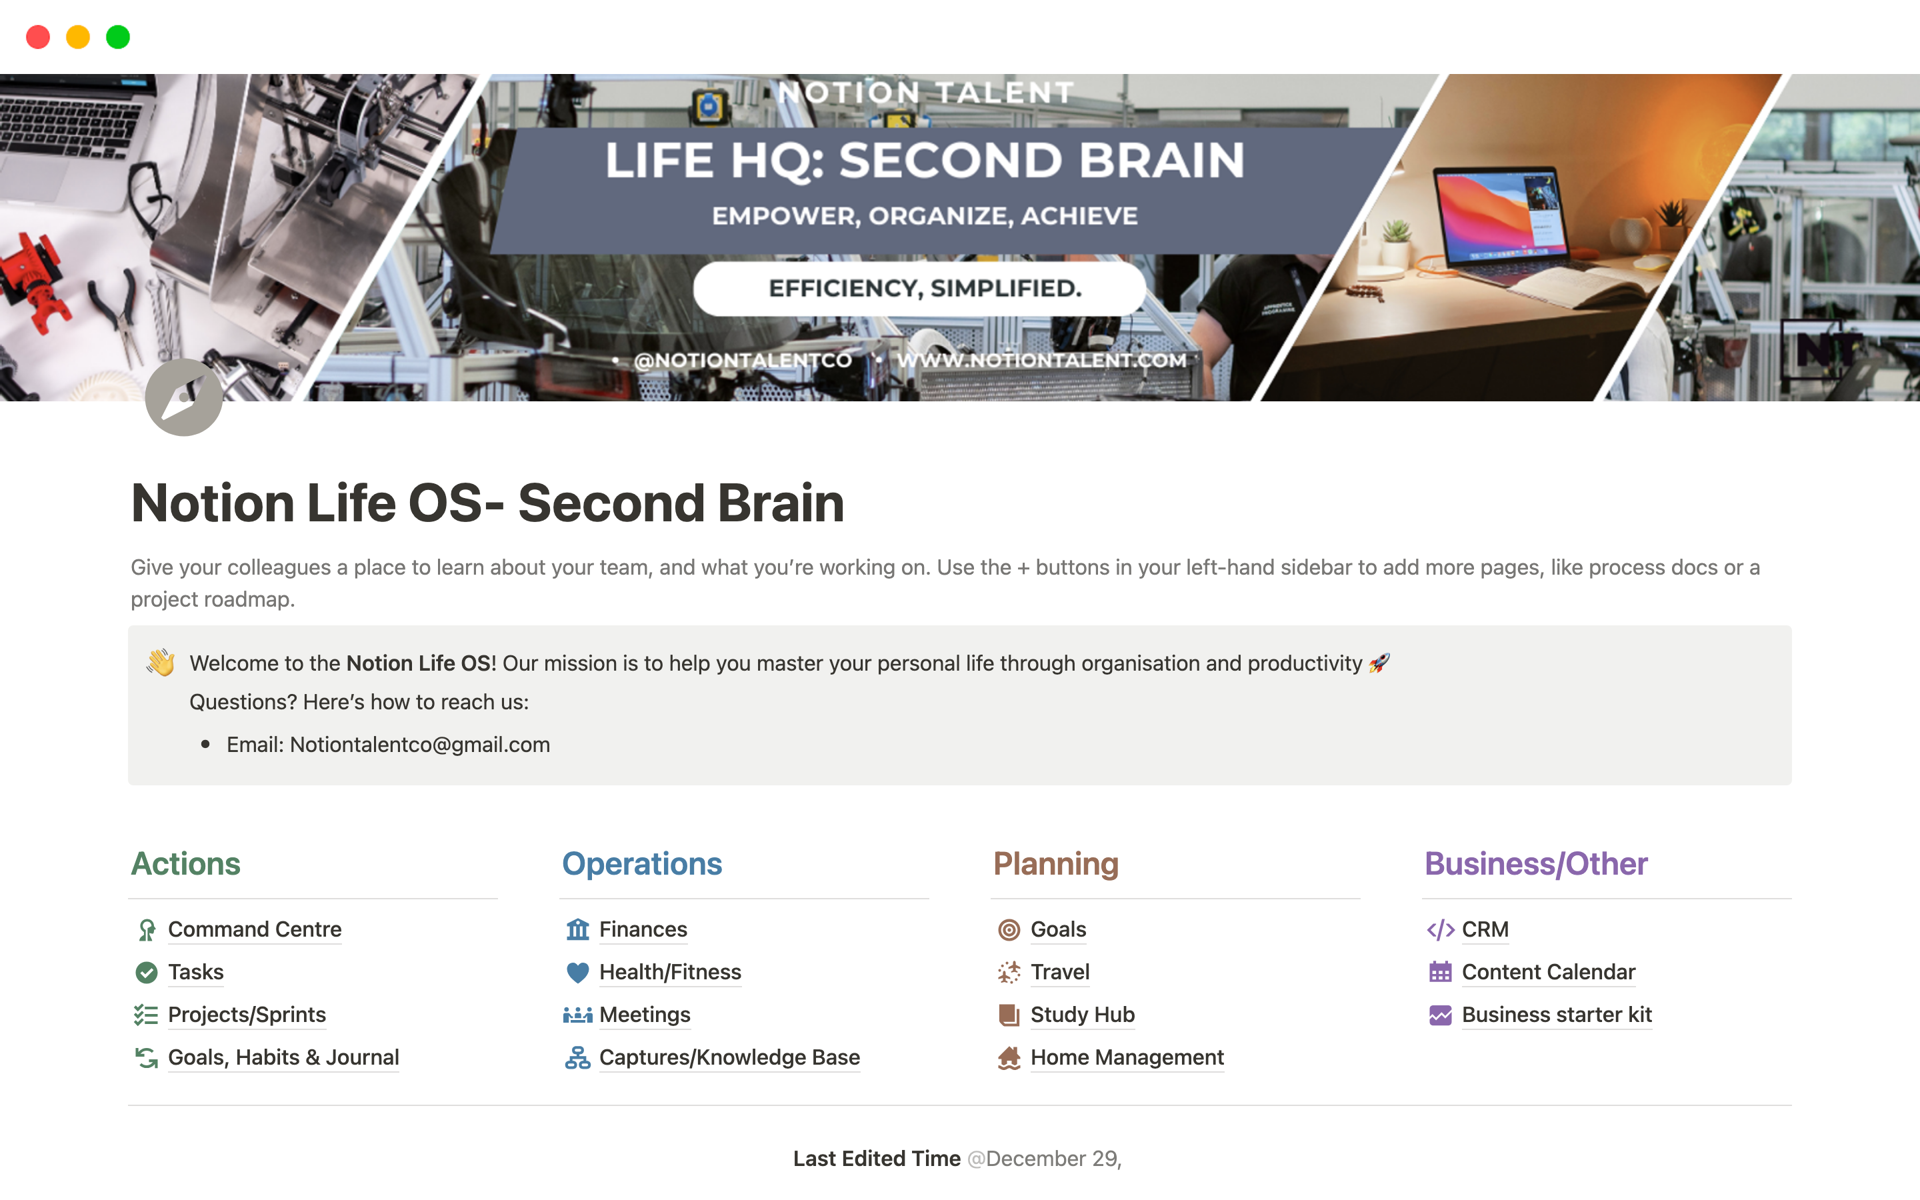 Uma prévia do modelo para Life OS - Second Brain 